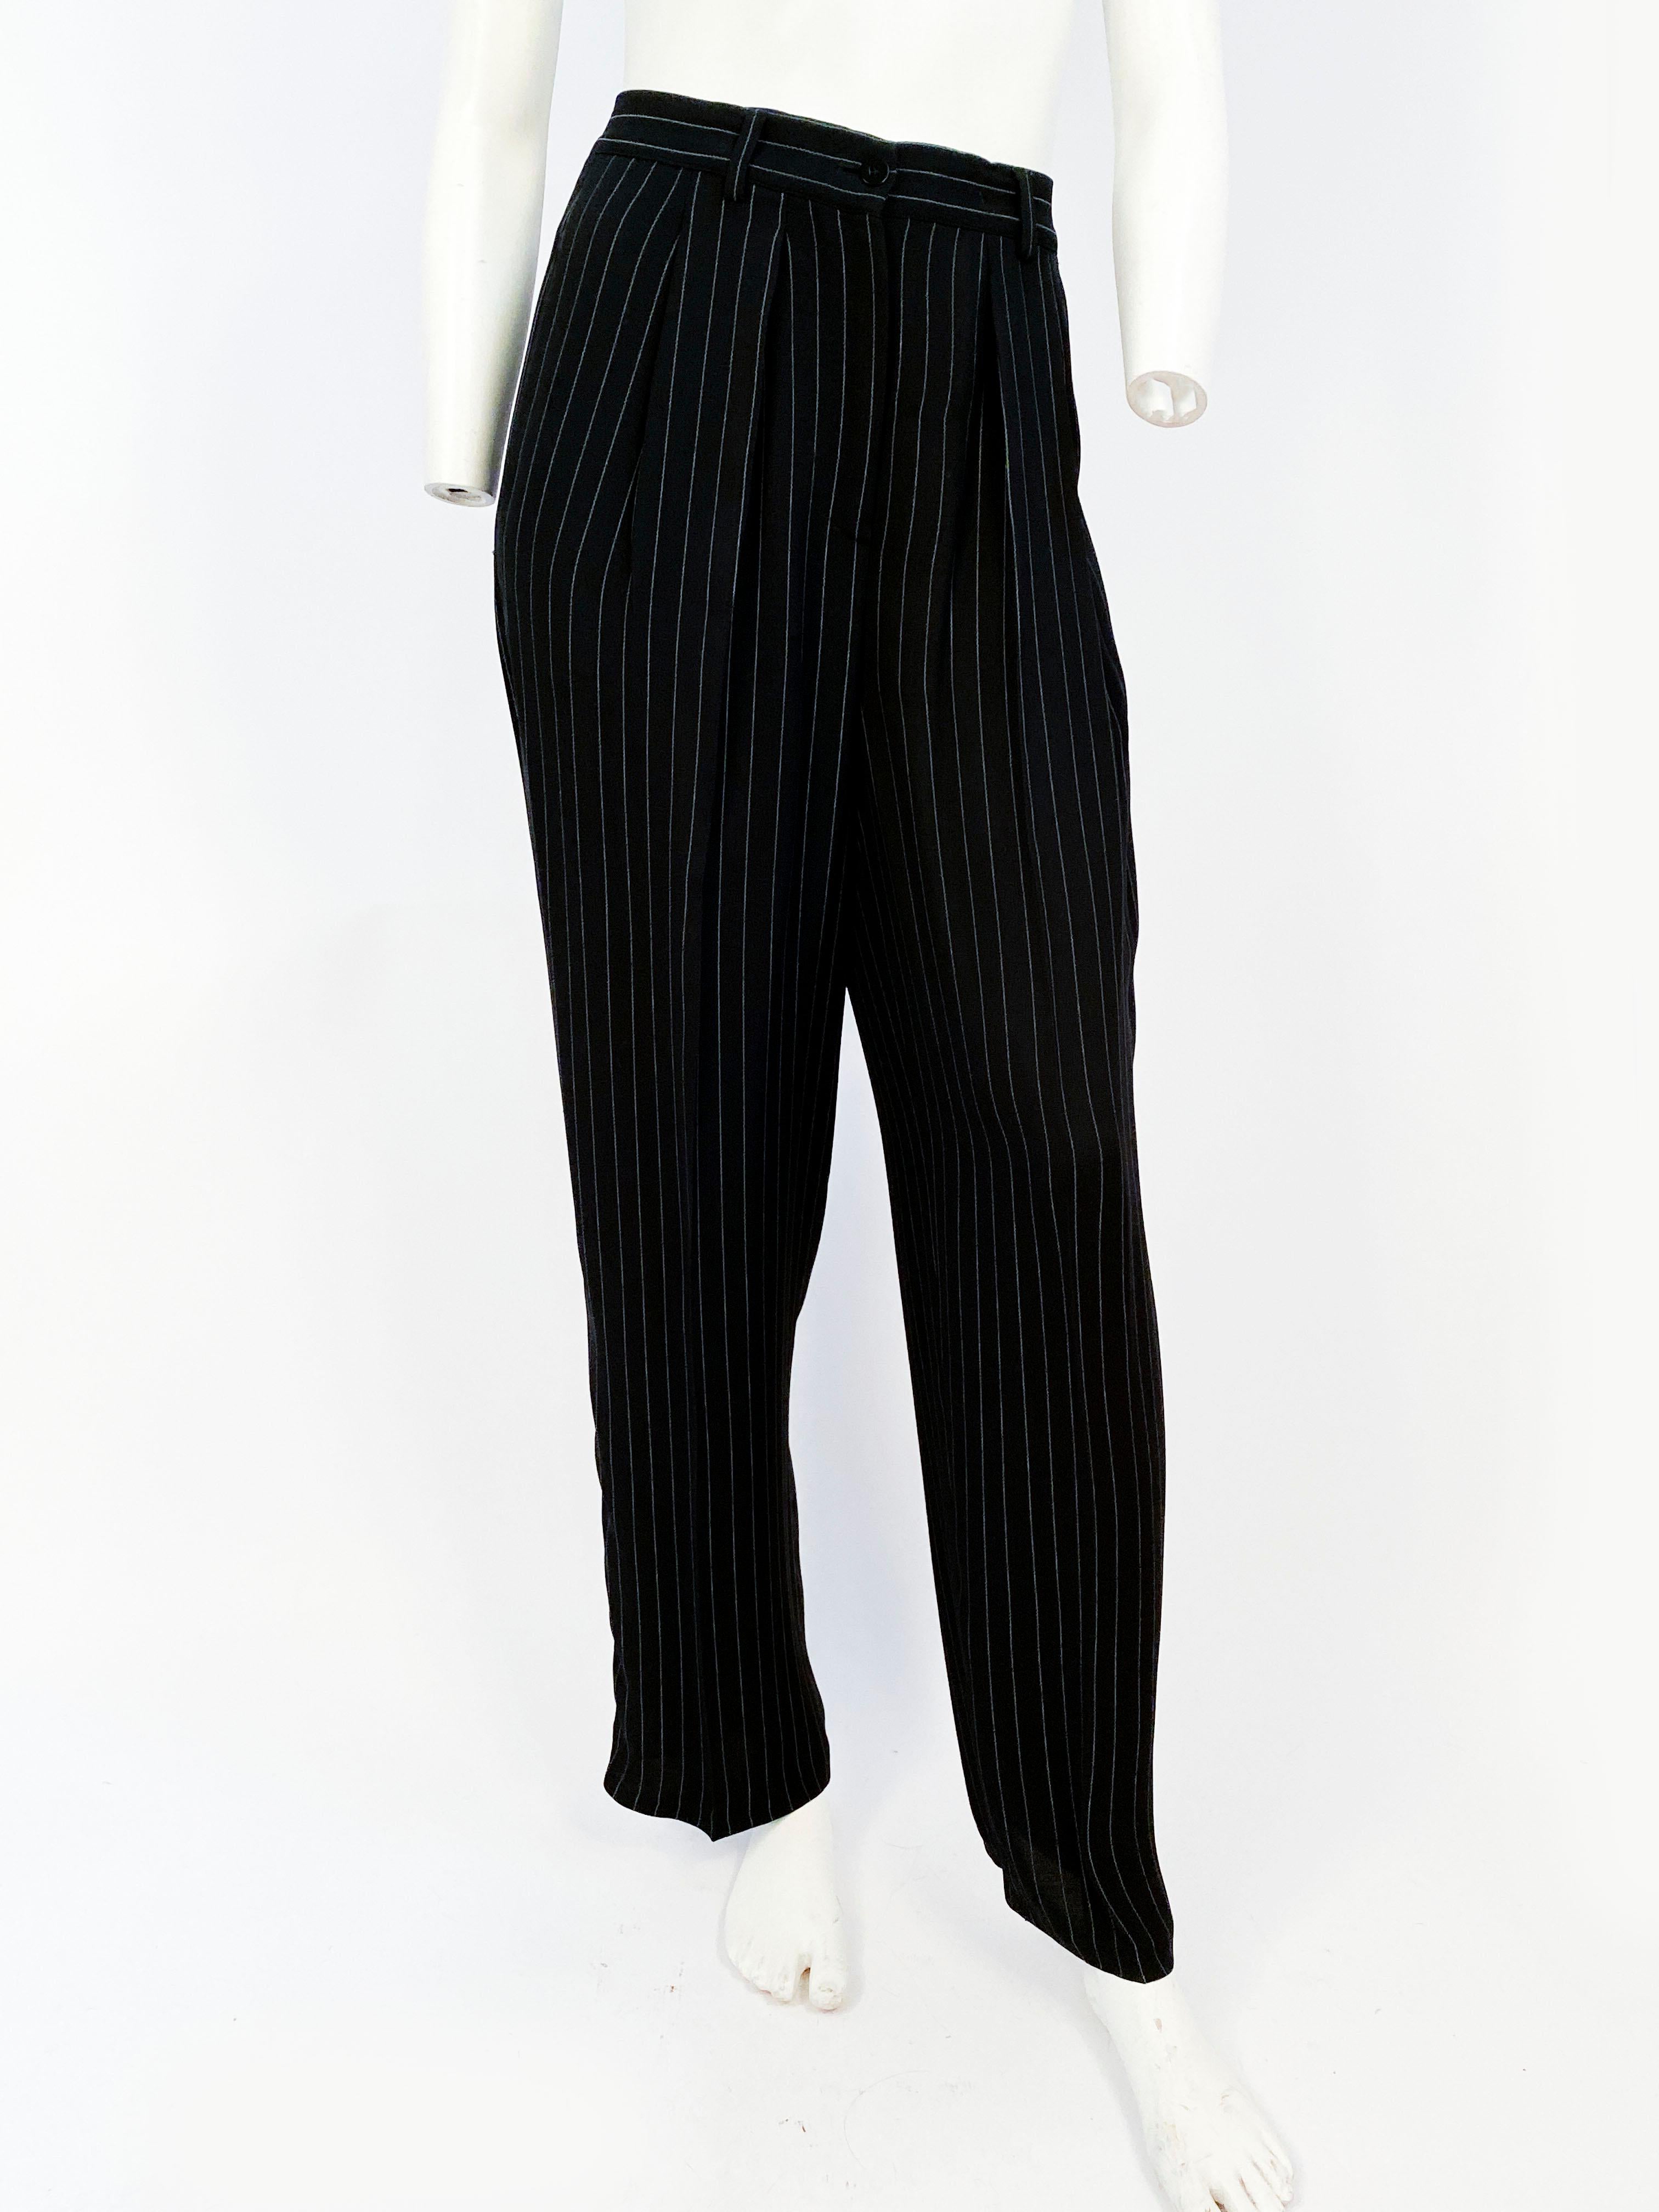 Women's 1990s Giorgio Armani Pinstripe Suits